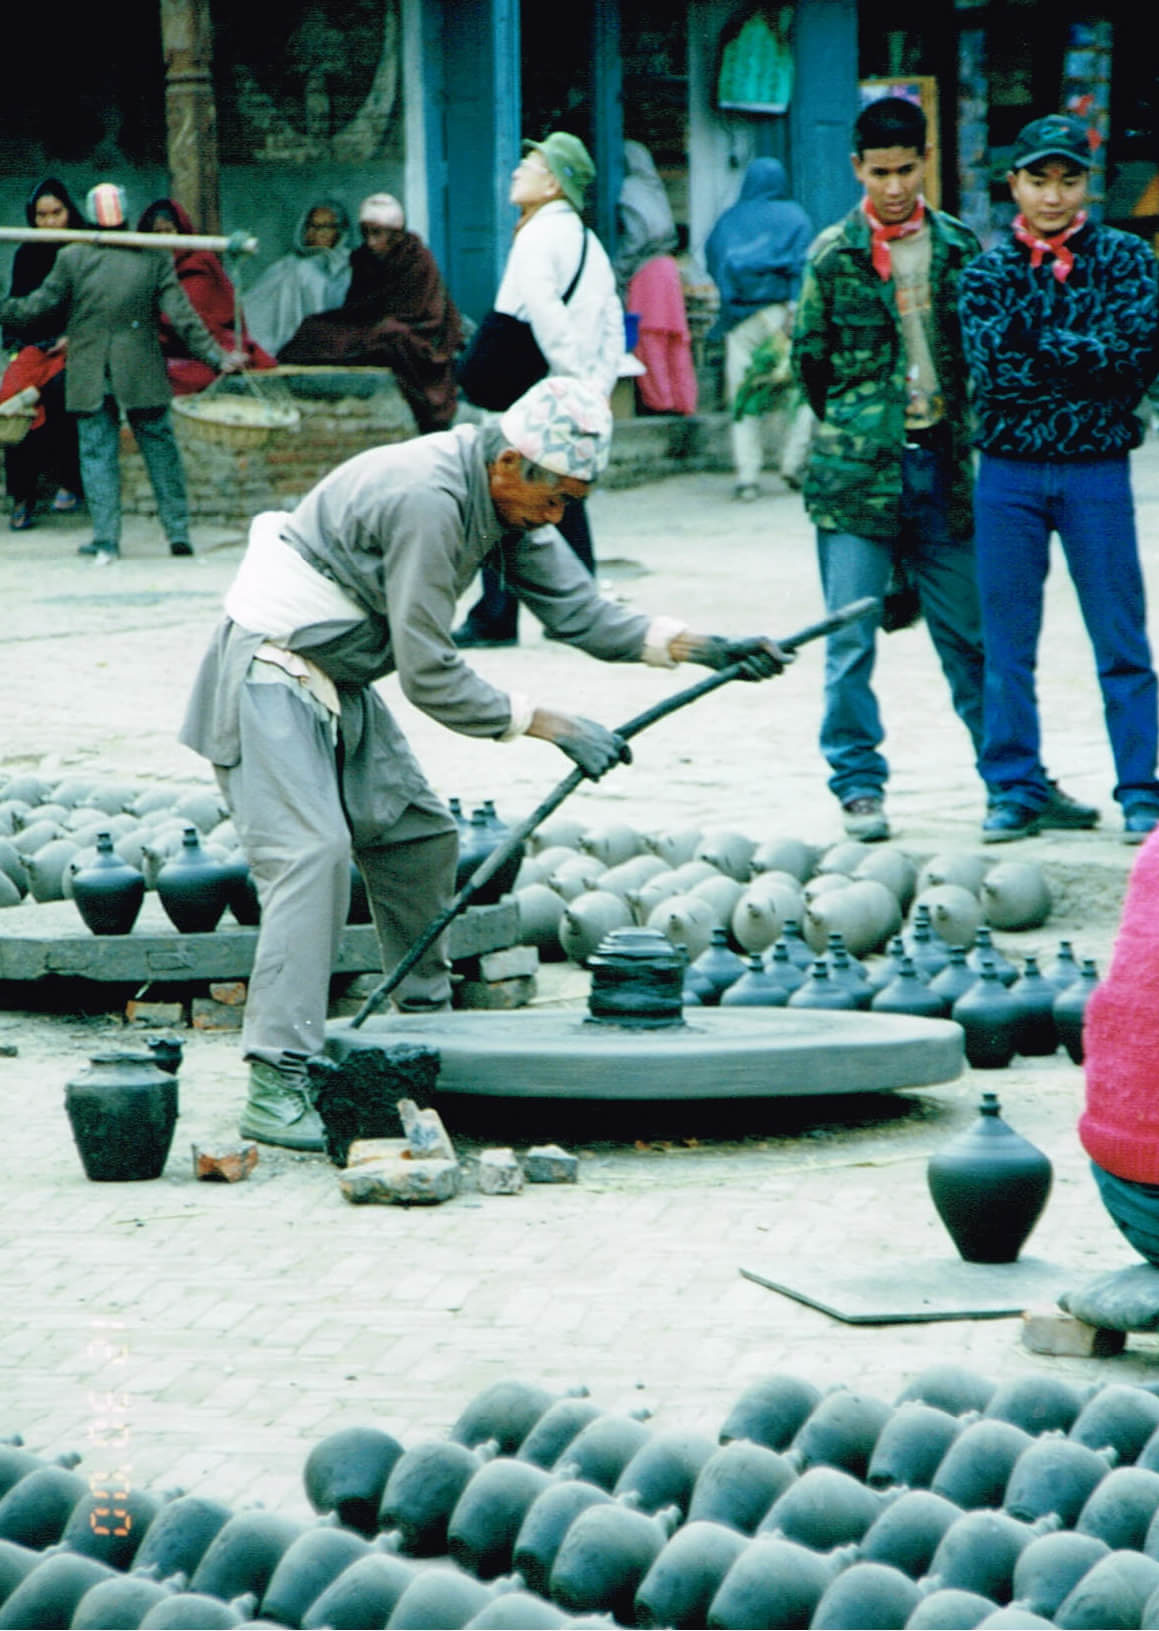 広場で陶器を作る男性